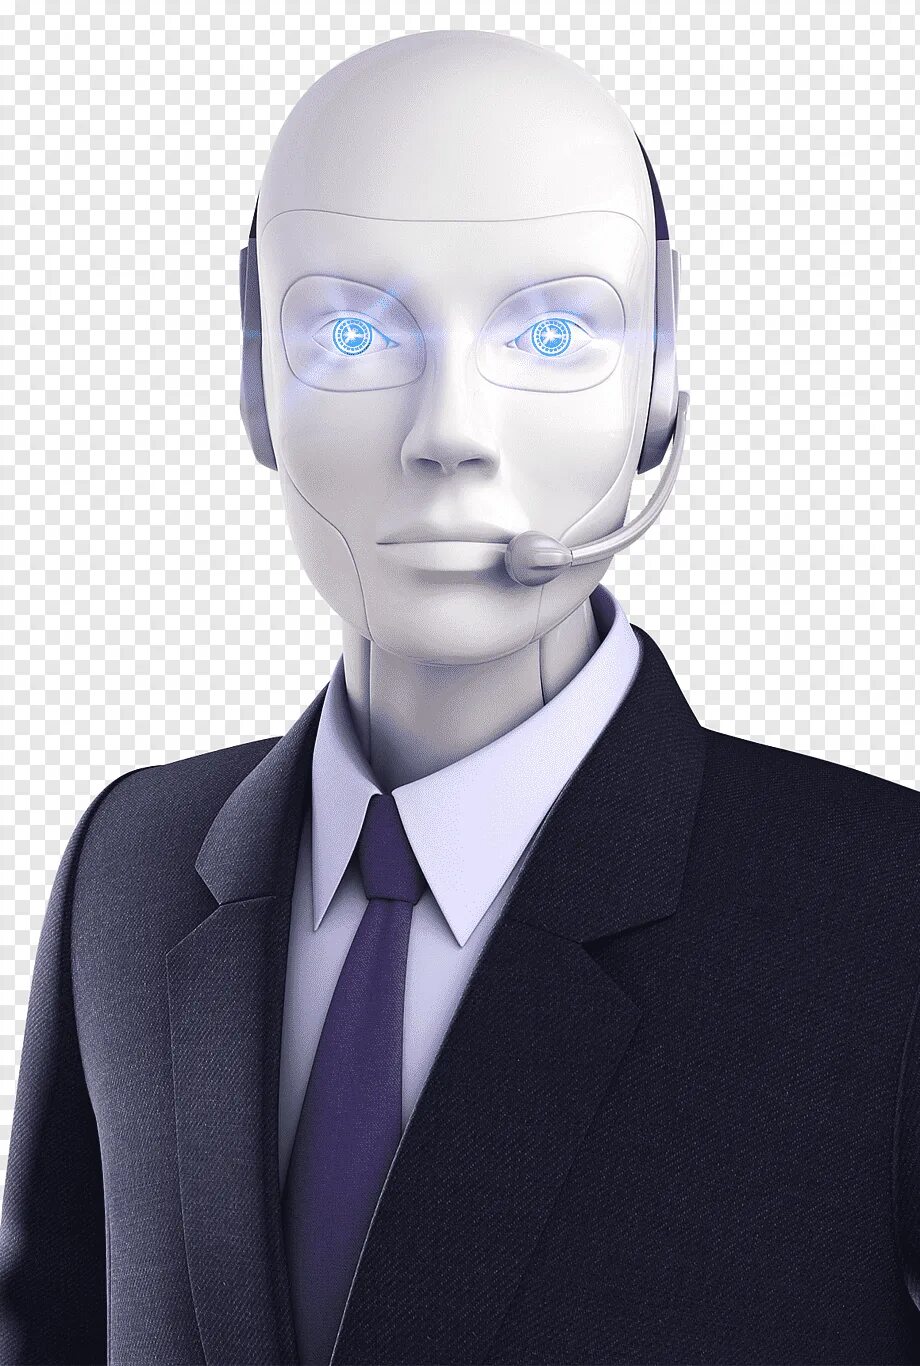 Искусственный интеллект. Робот с искусственным интеллектом. Робот человек. Лицо робота. Голосовой робот для бизнеса